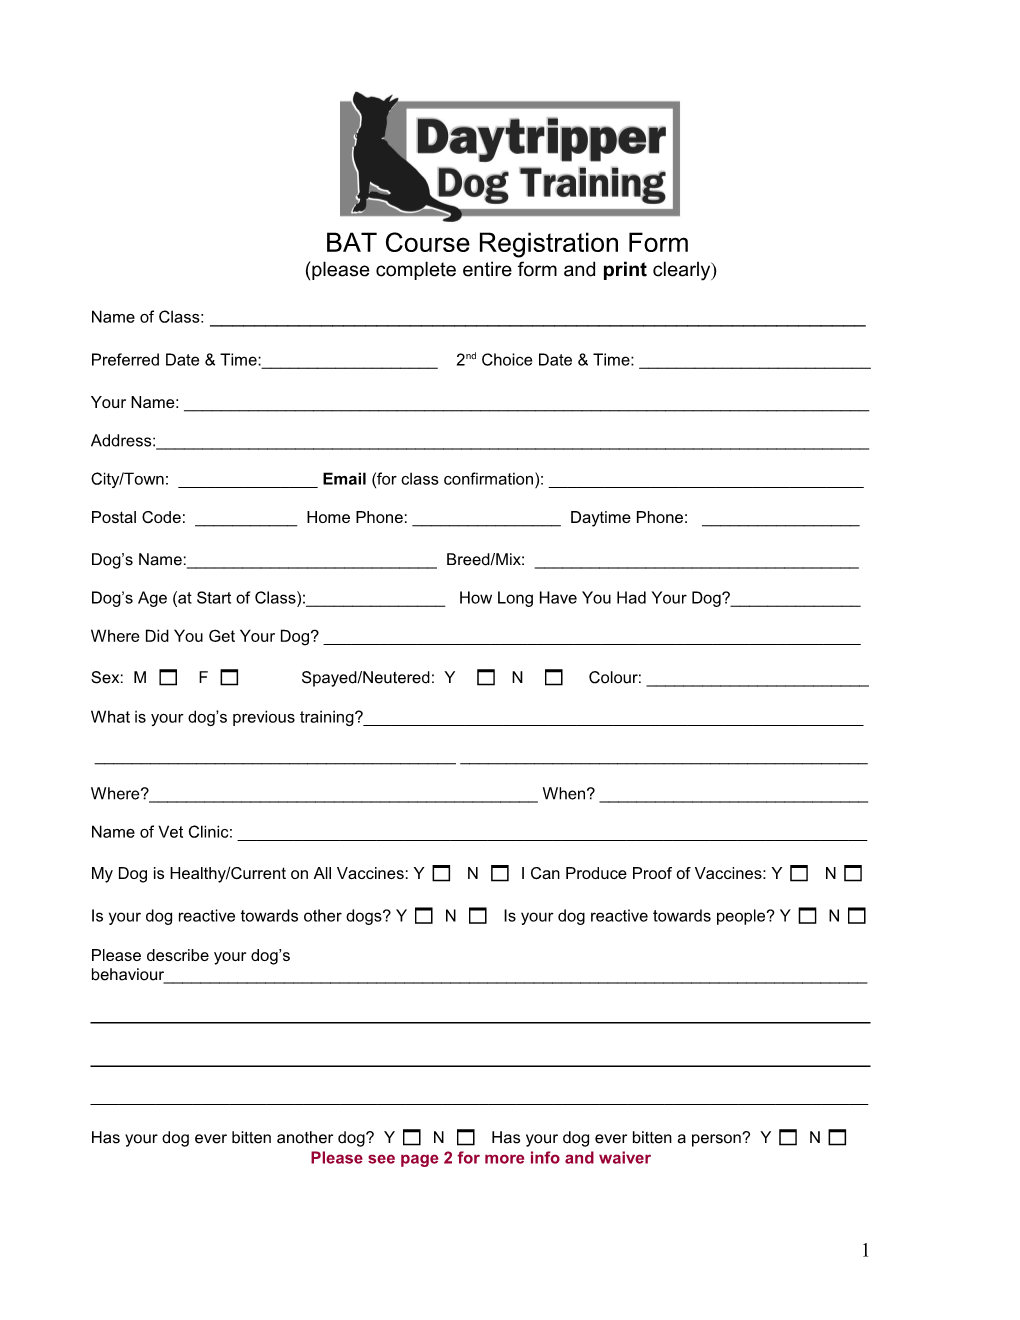 Daytripper Dog Training